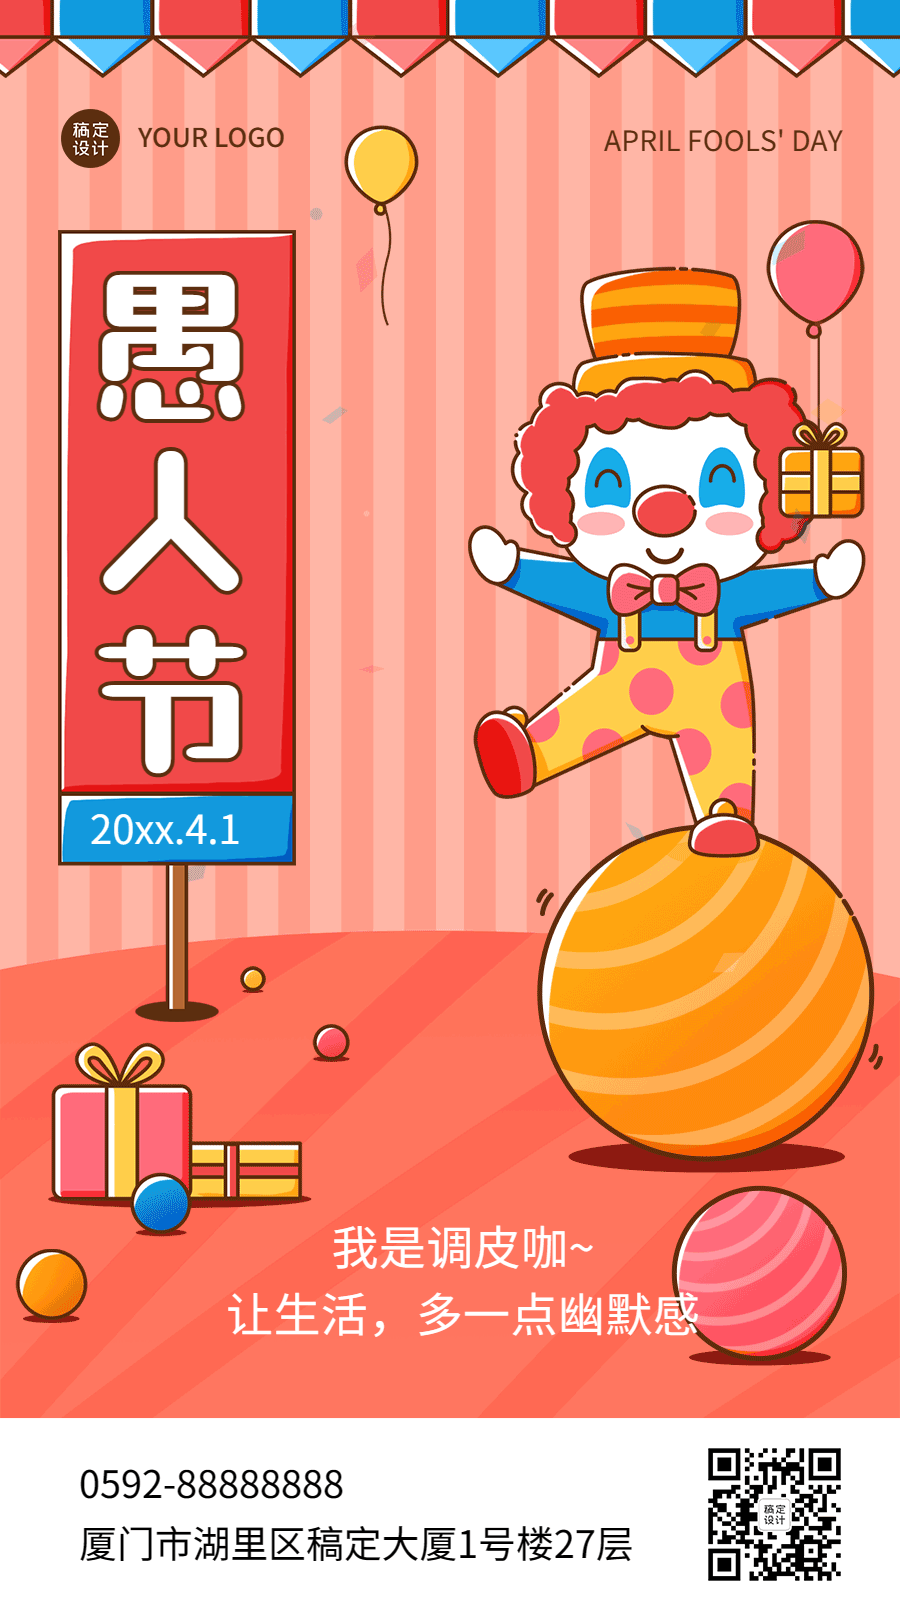 4.1愚人节节日祝福插画动态手机海报预览效果